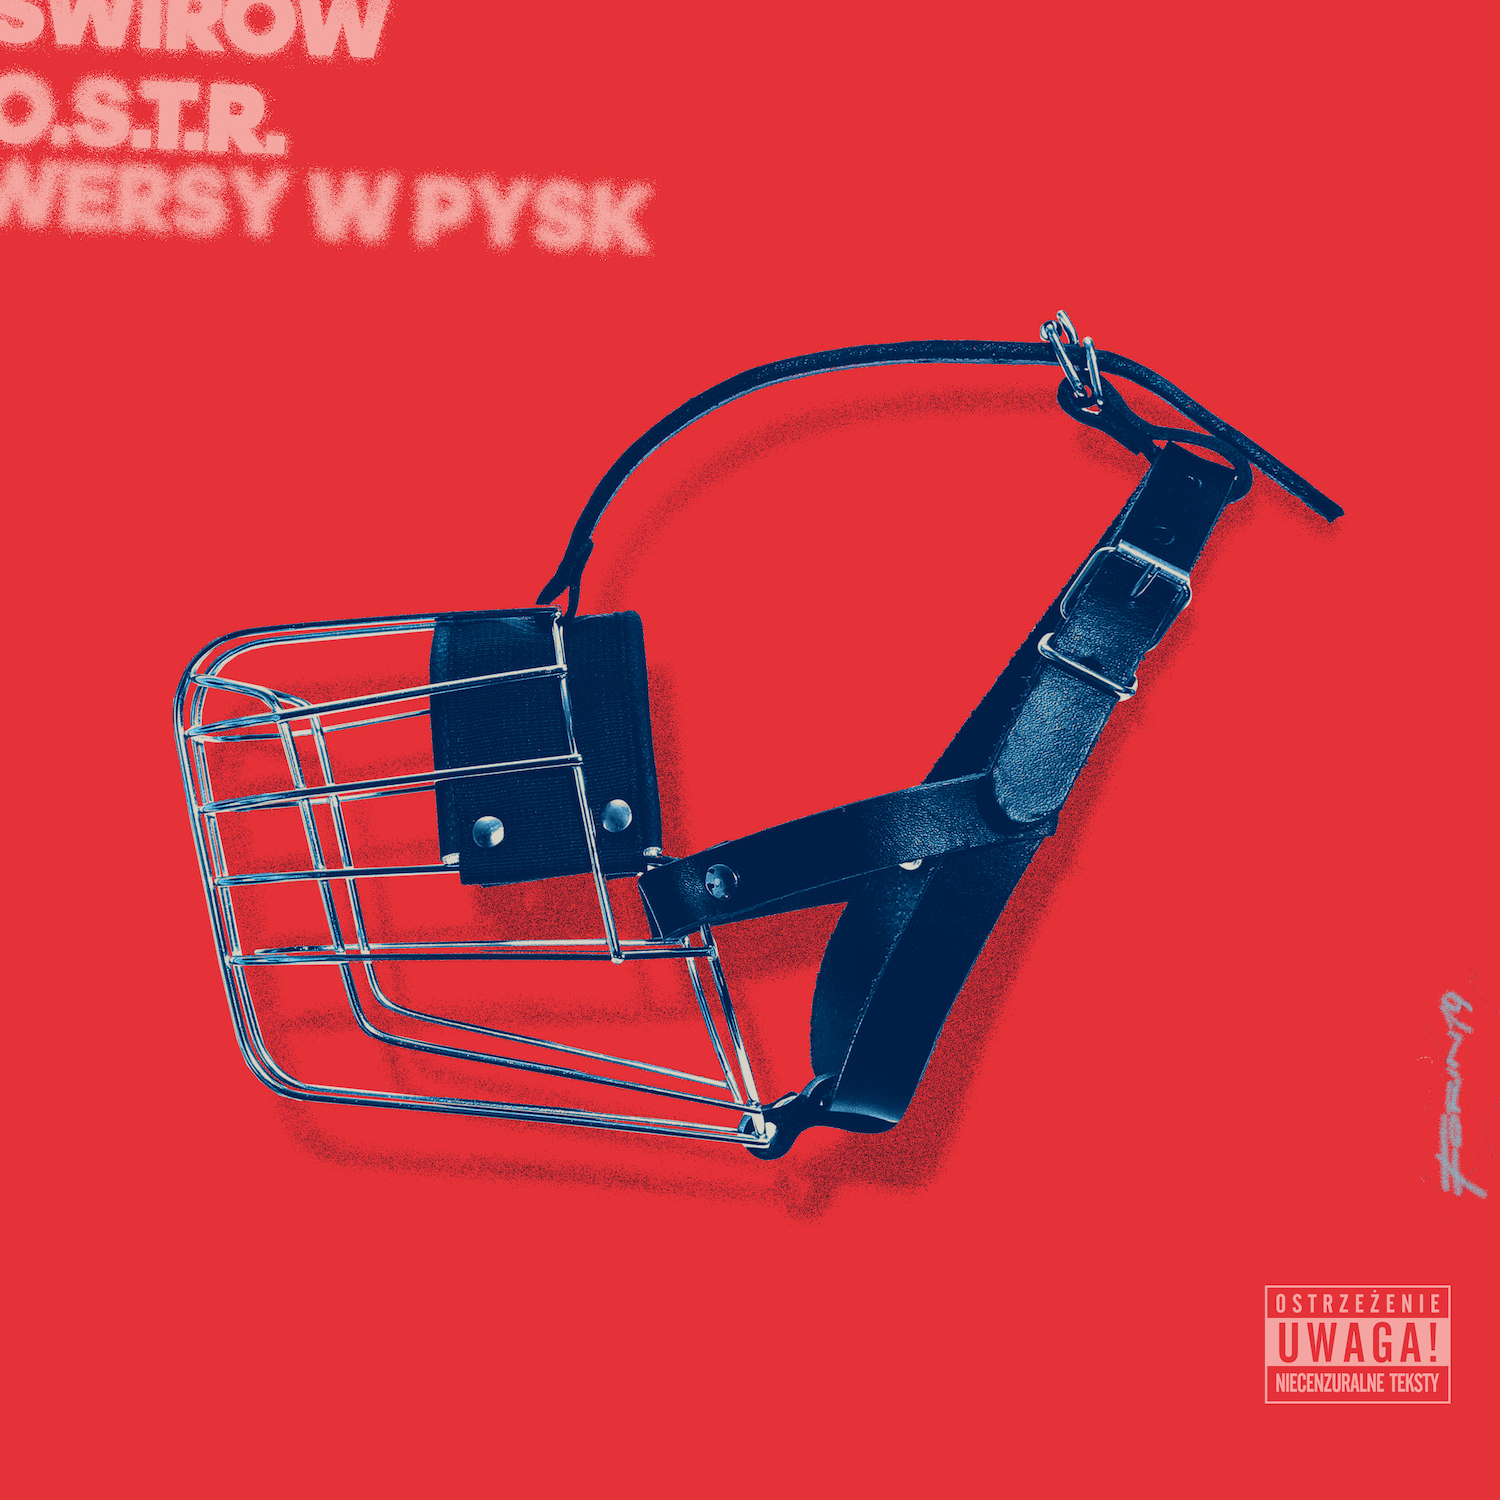 Wersy w Pysk || O.S.T.R. z nowym singlem w serwisach streamingowych!